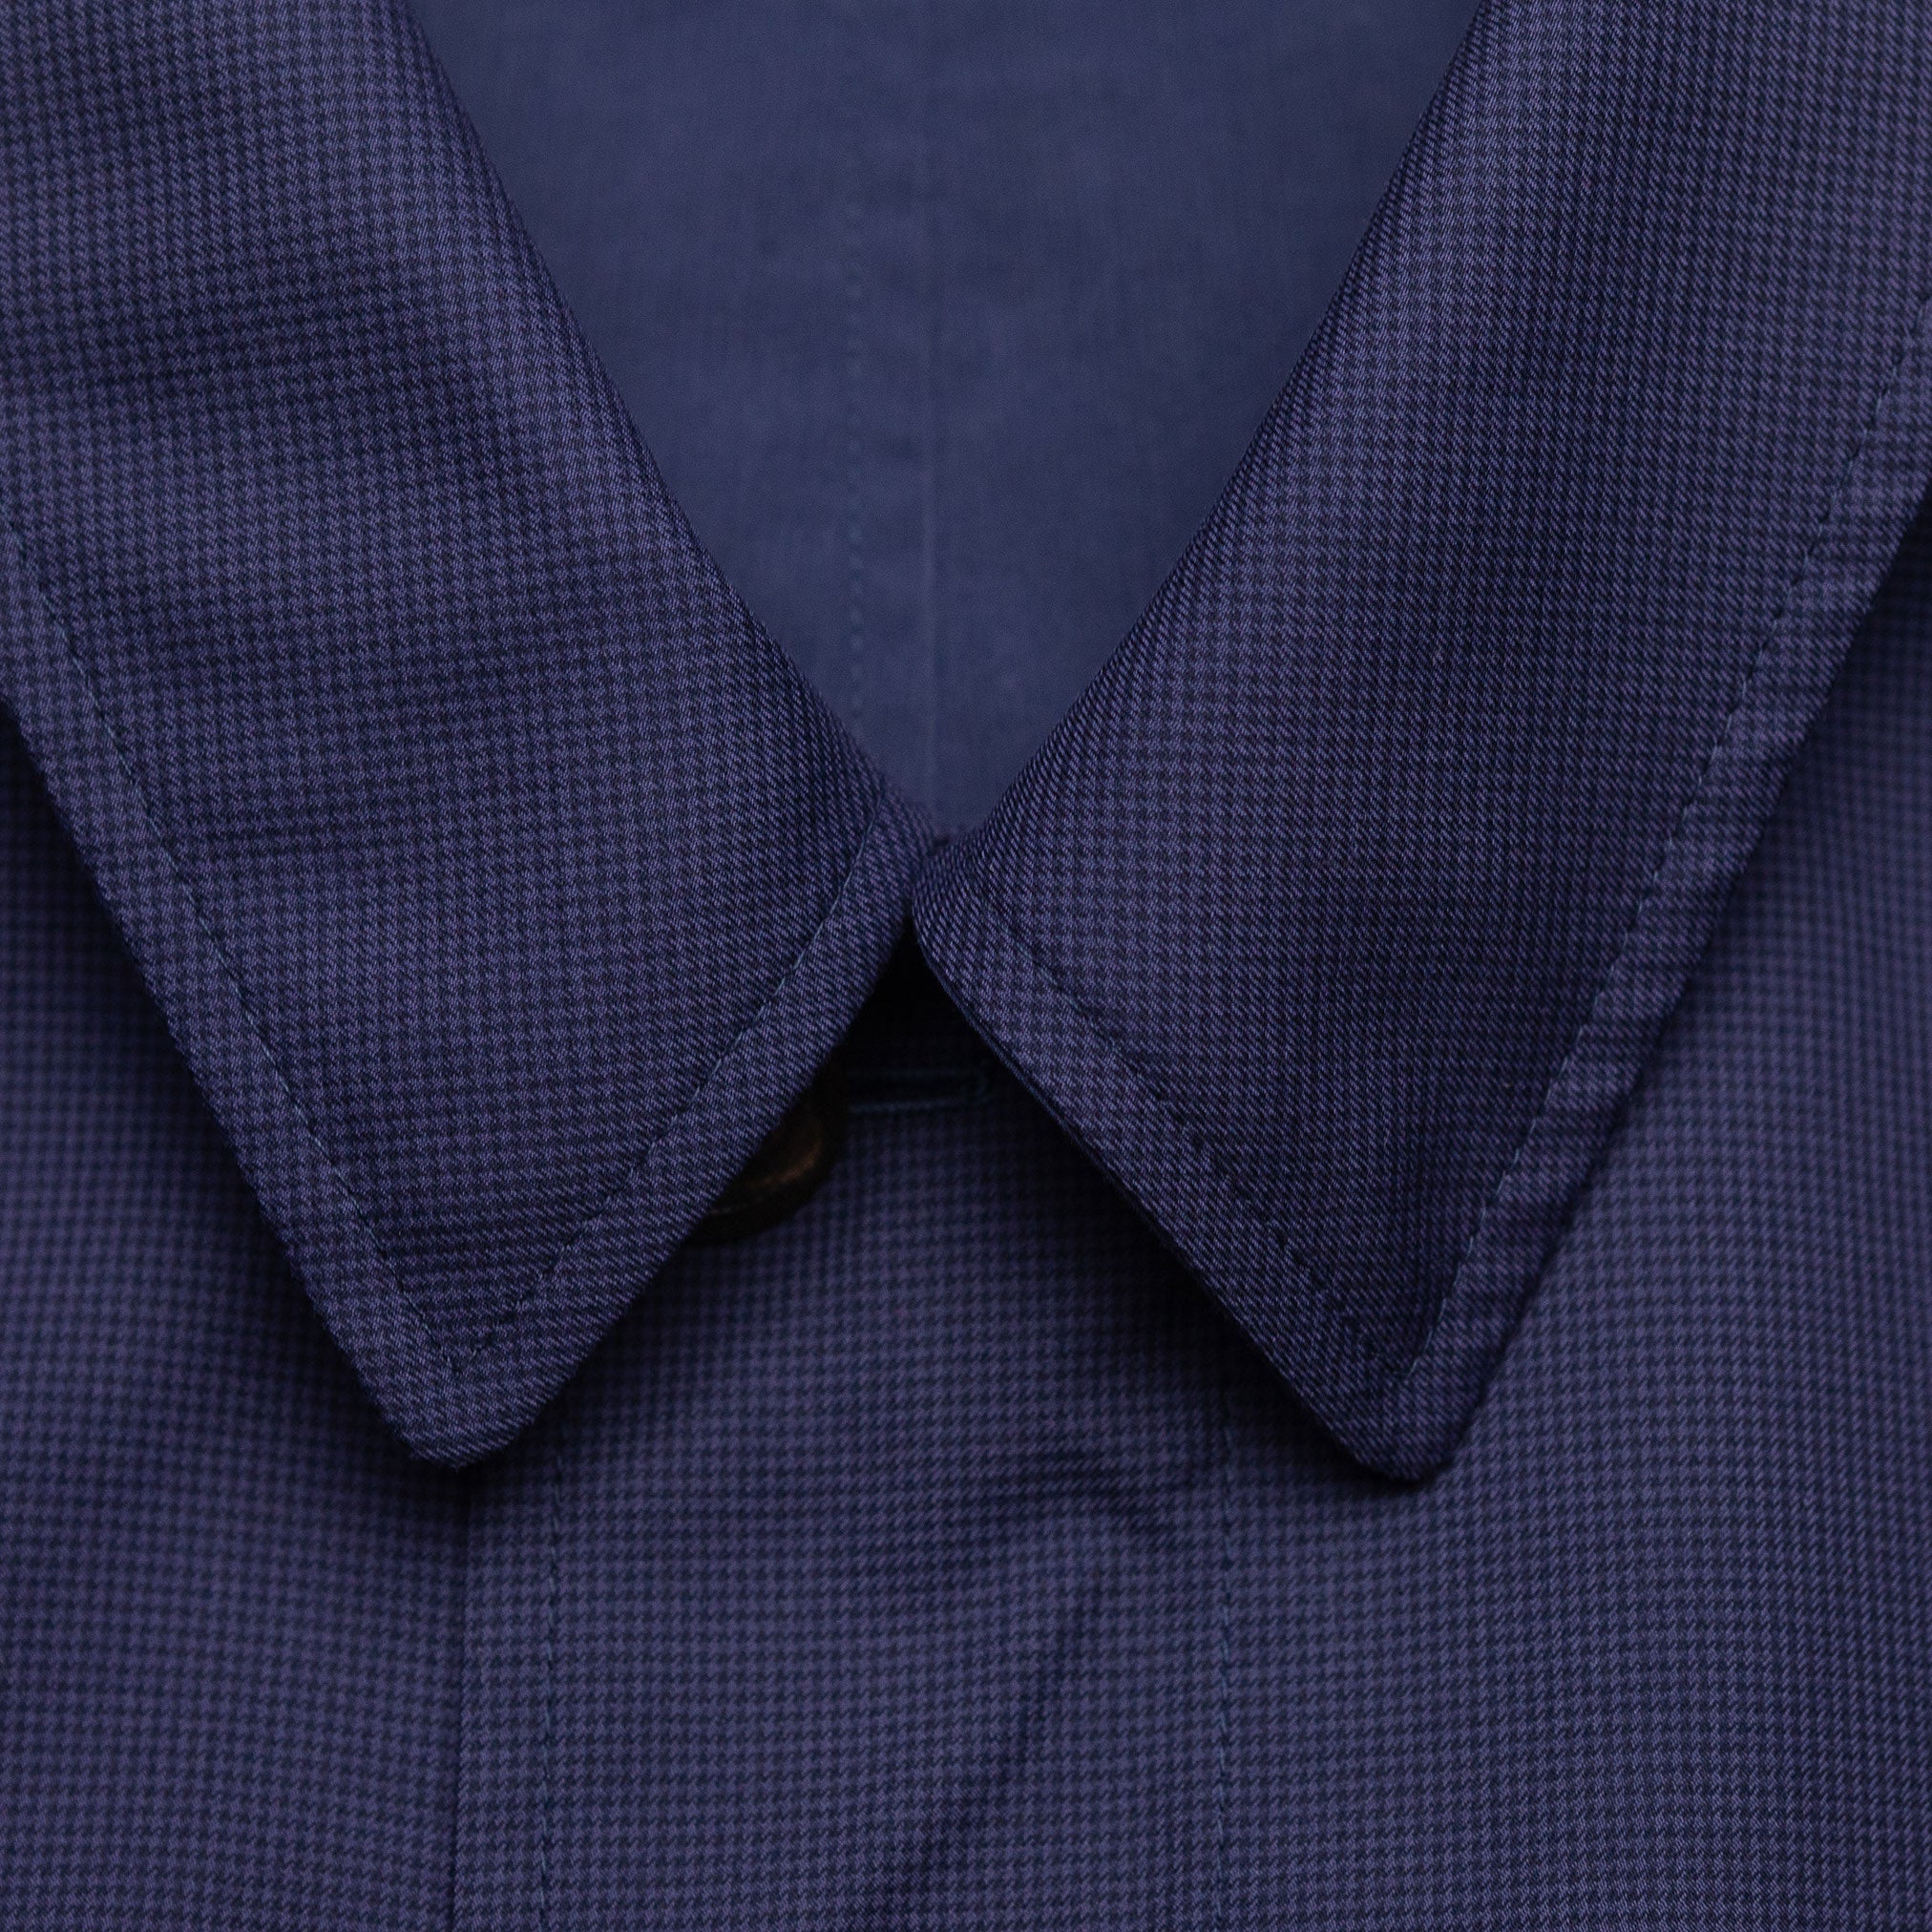 Reversible Navy Coat in Cotton & Silk (48)